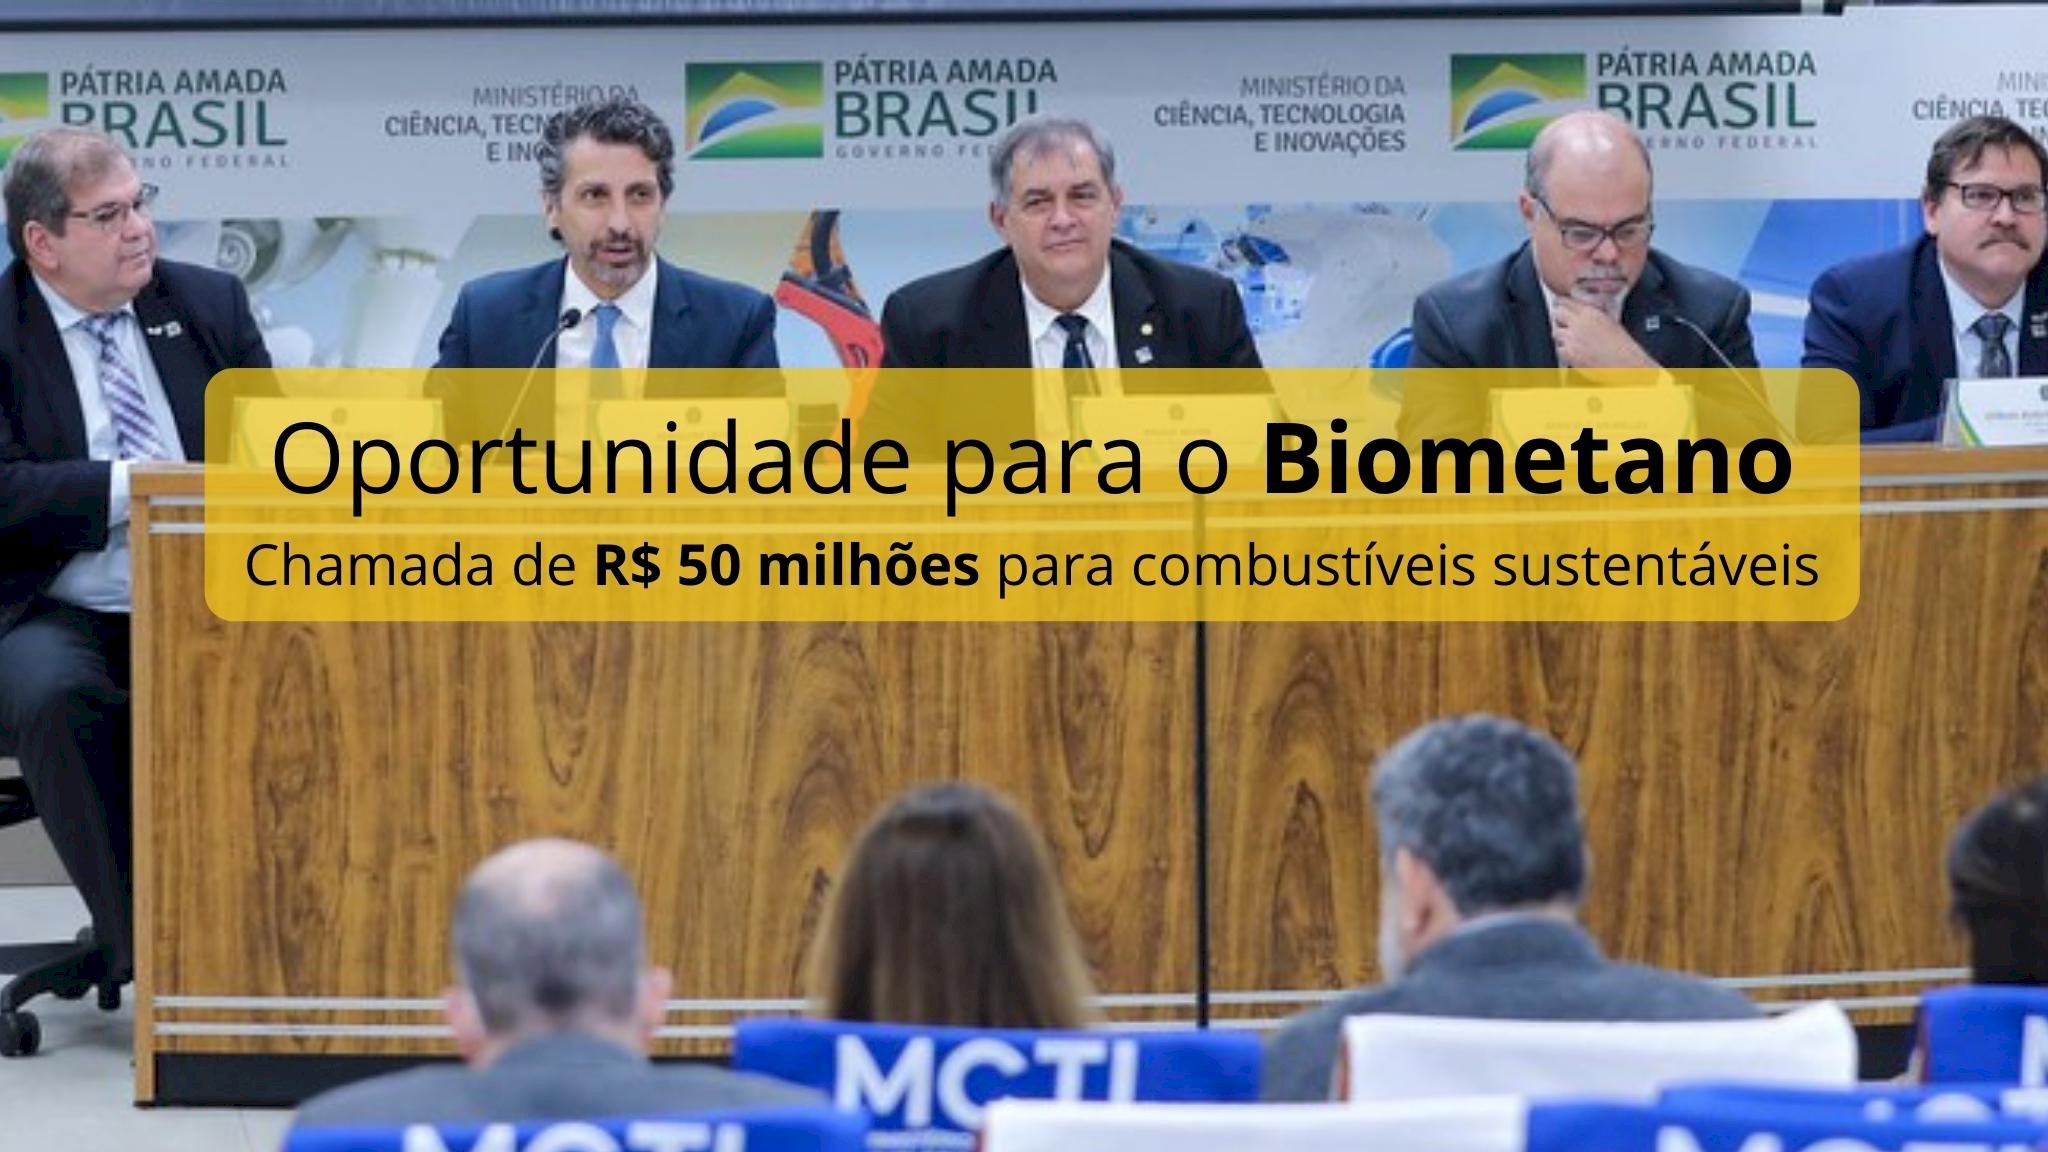 Oportunidade para o biometano - MCTI lança chamada de R$ 50 milhões para desenvolvimento de combustíveis sustentáveis